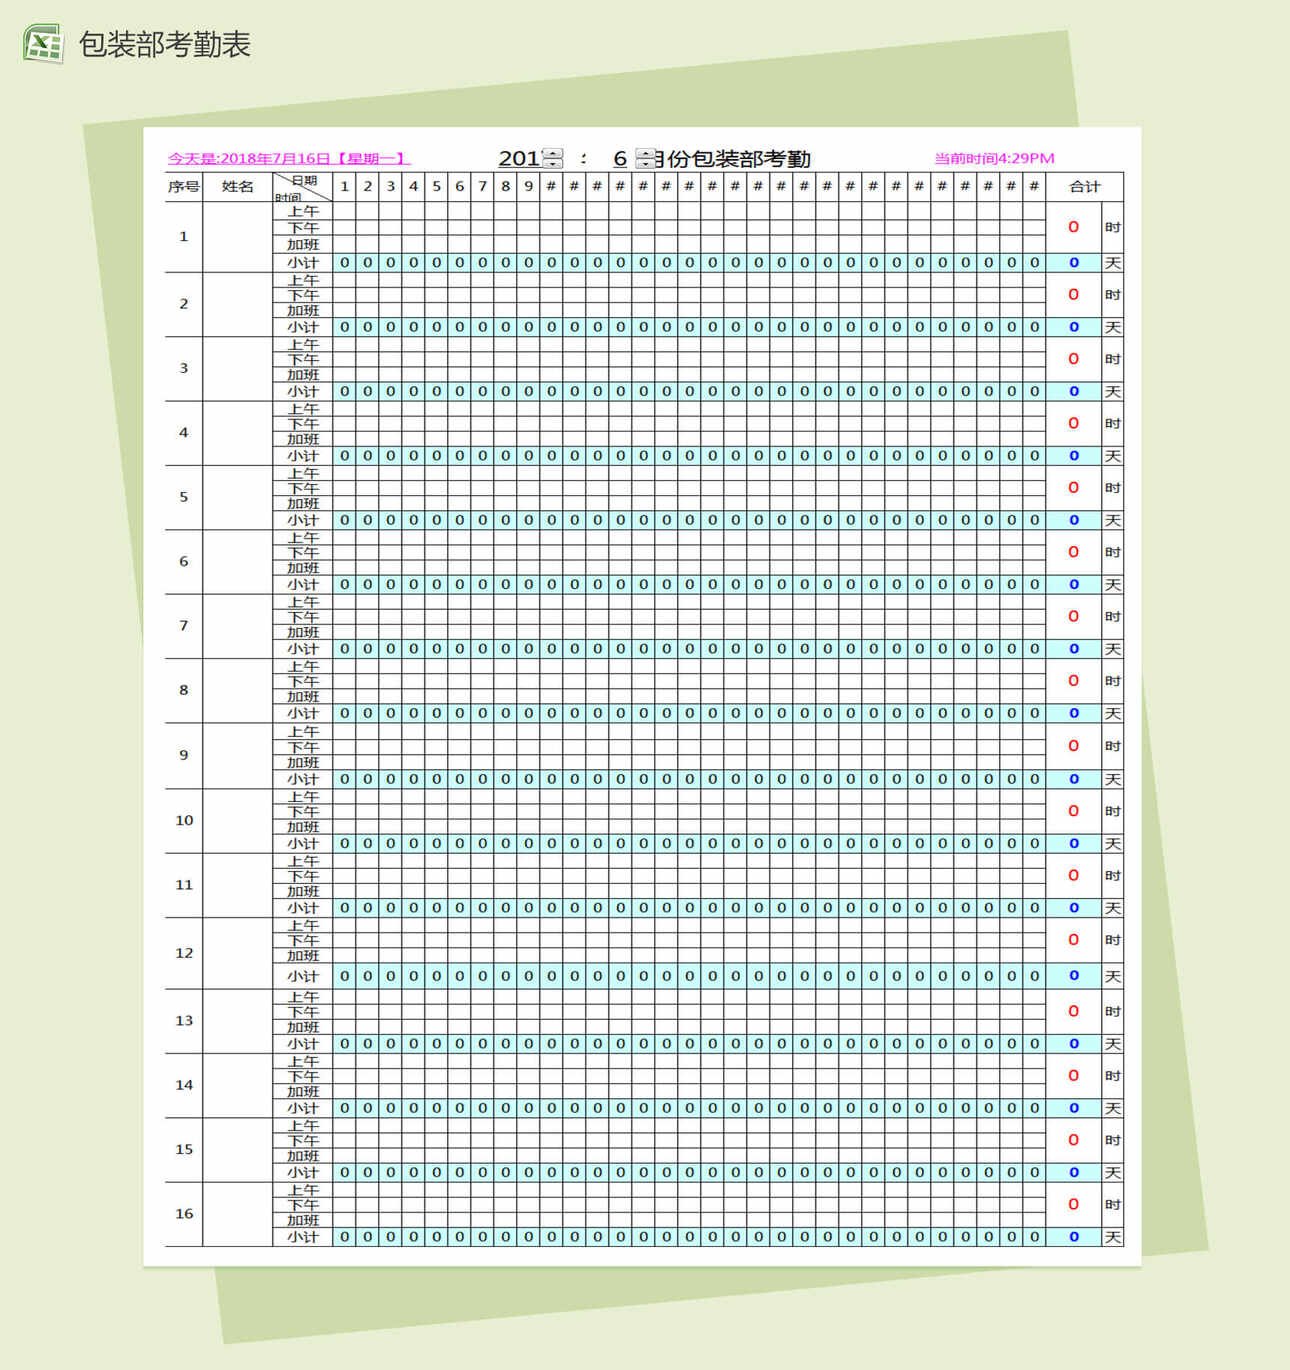 企业包装部考勤表Excel表格制作模板